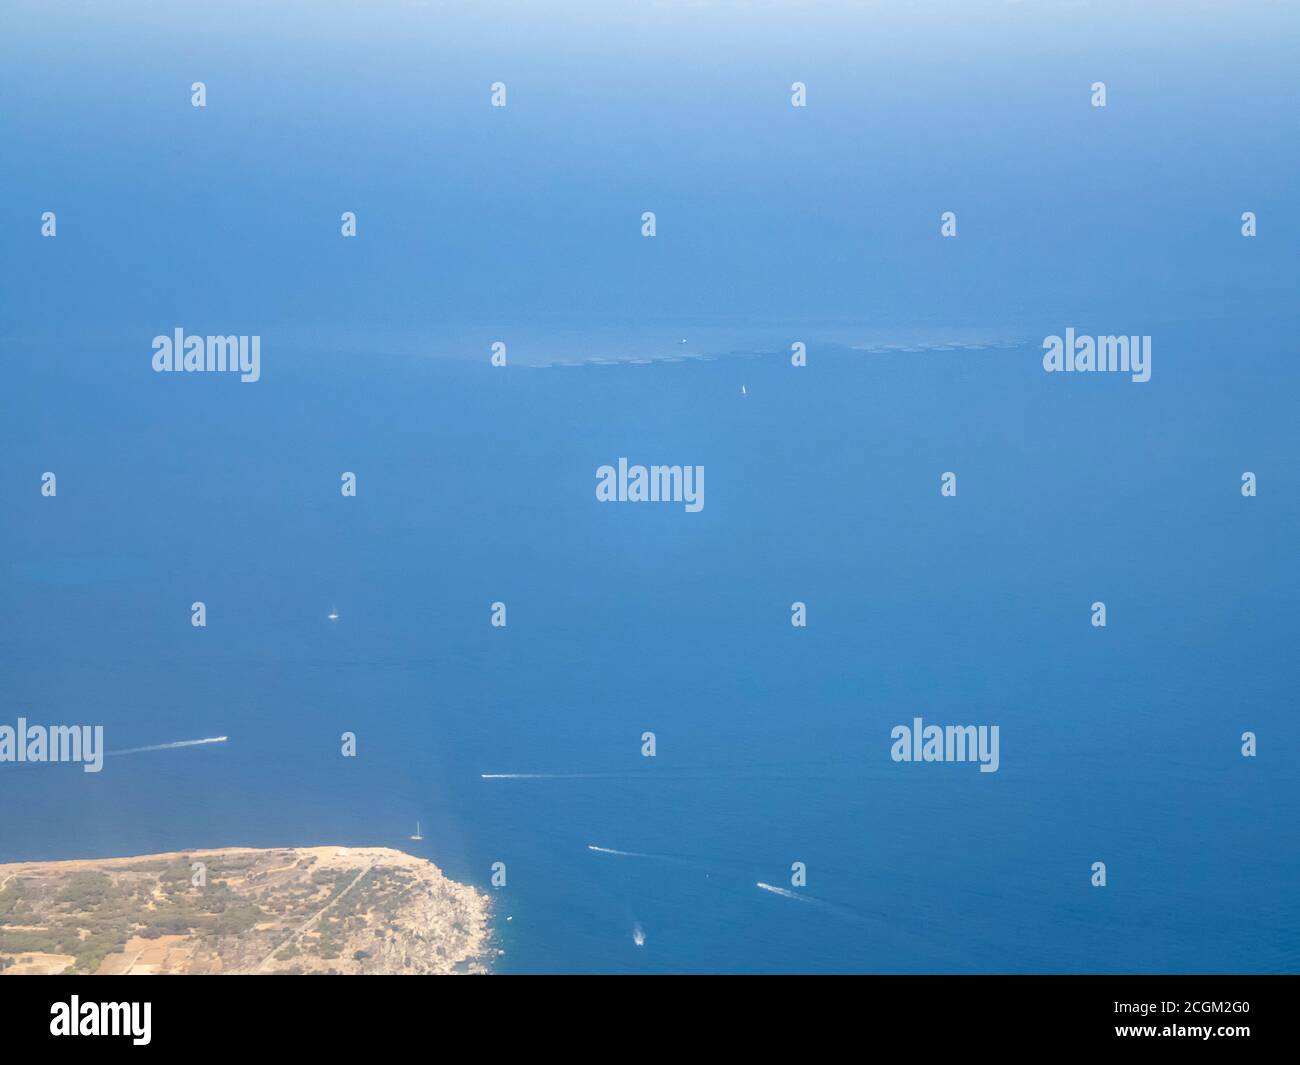 An tuna farm off the coast of Malta Stock Photo